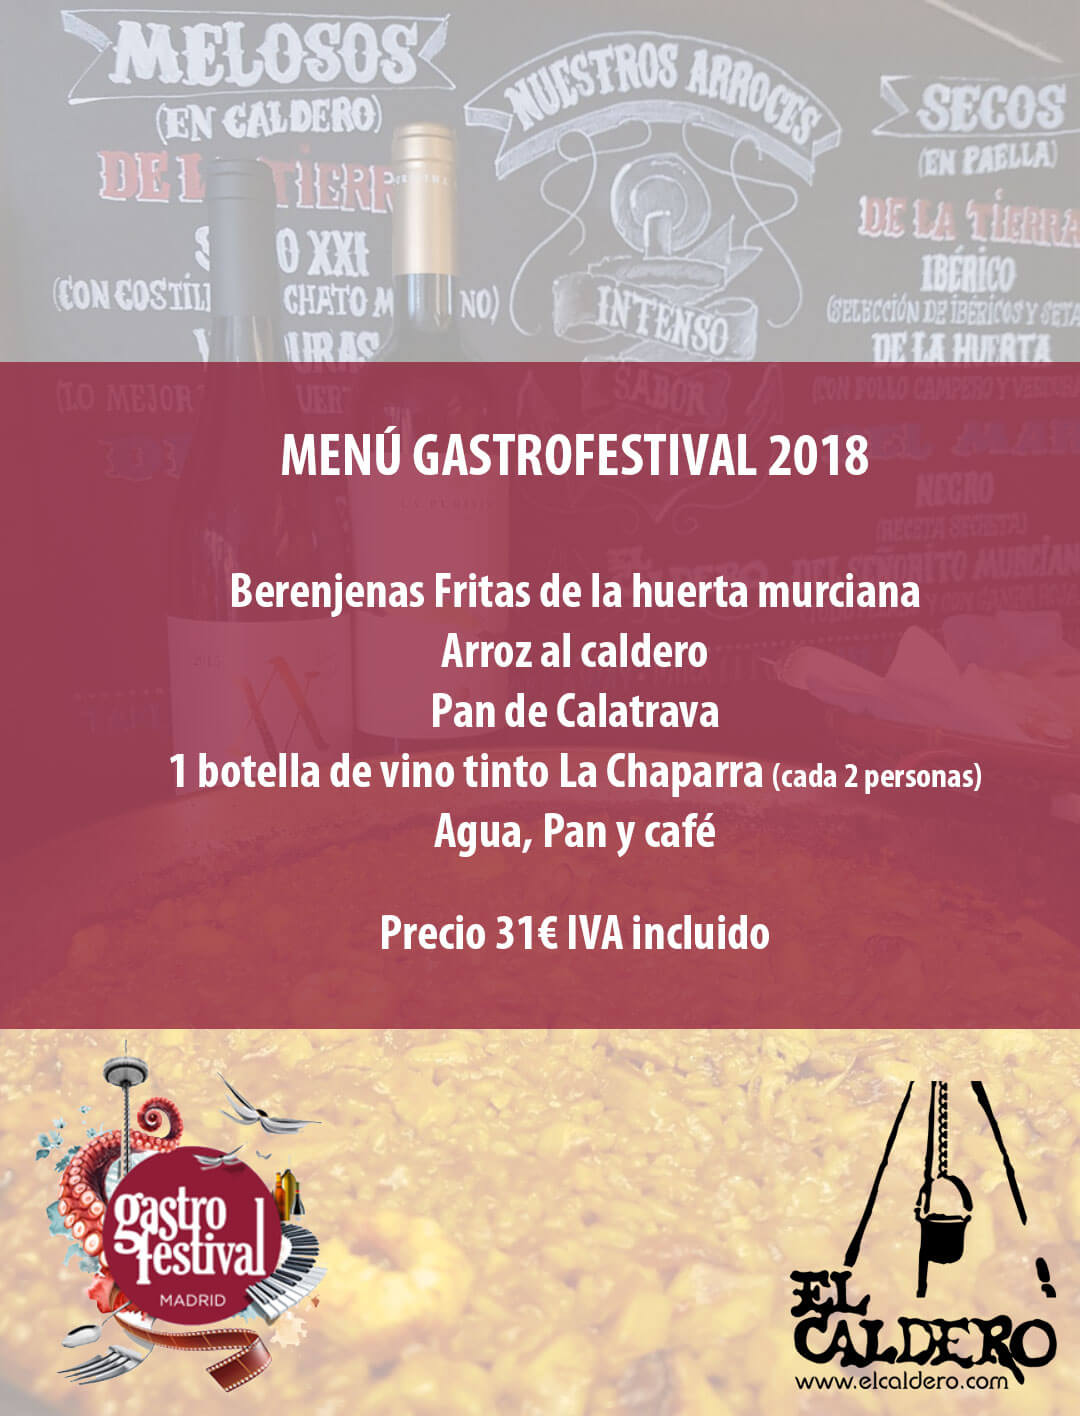 CALDERO MADRID FUSION ¡Menú especial cardiosaludable para un Gastrofestival de arte!